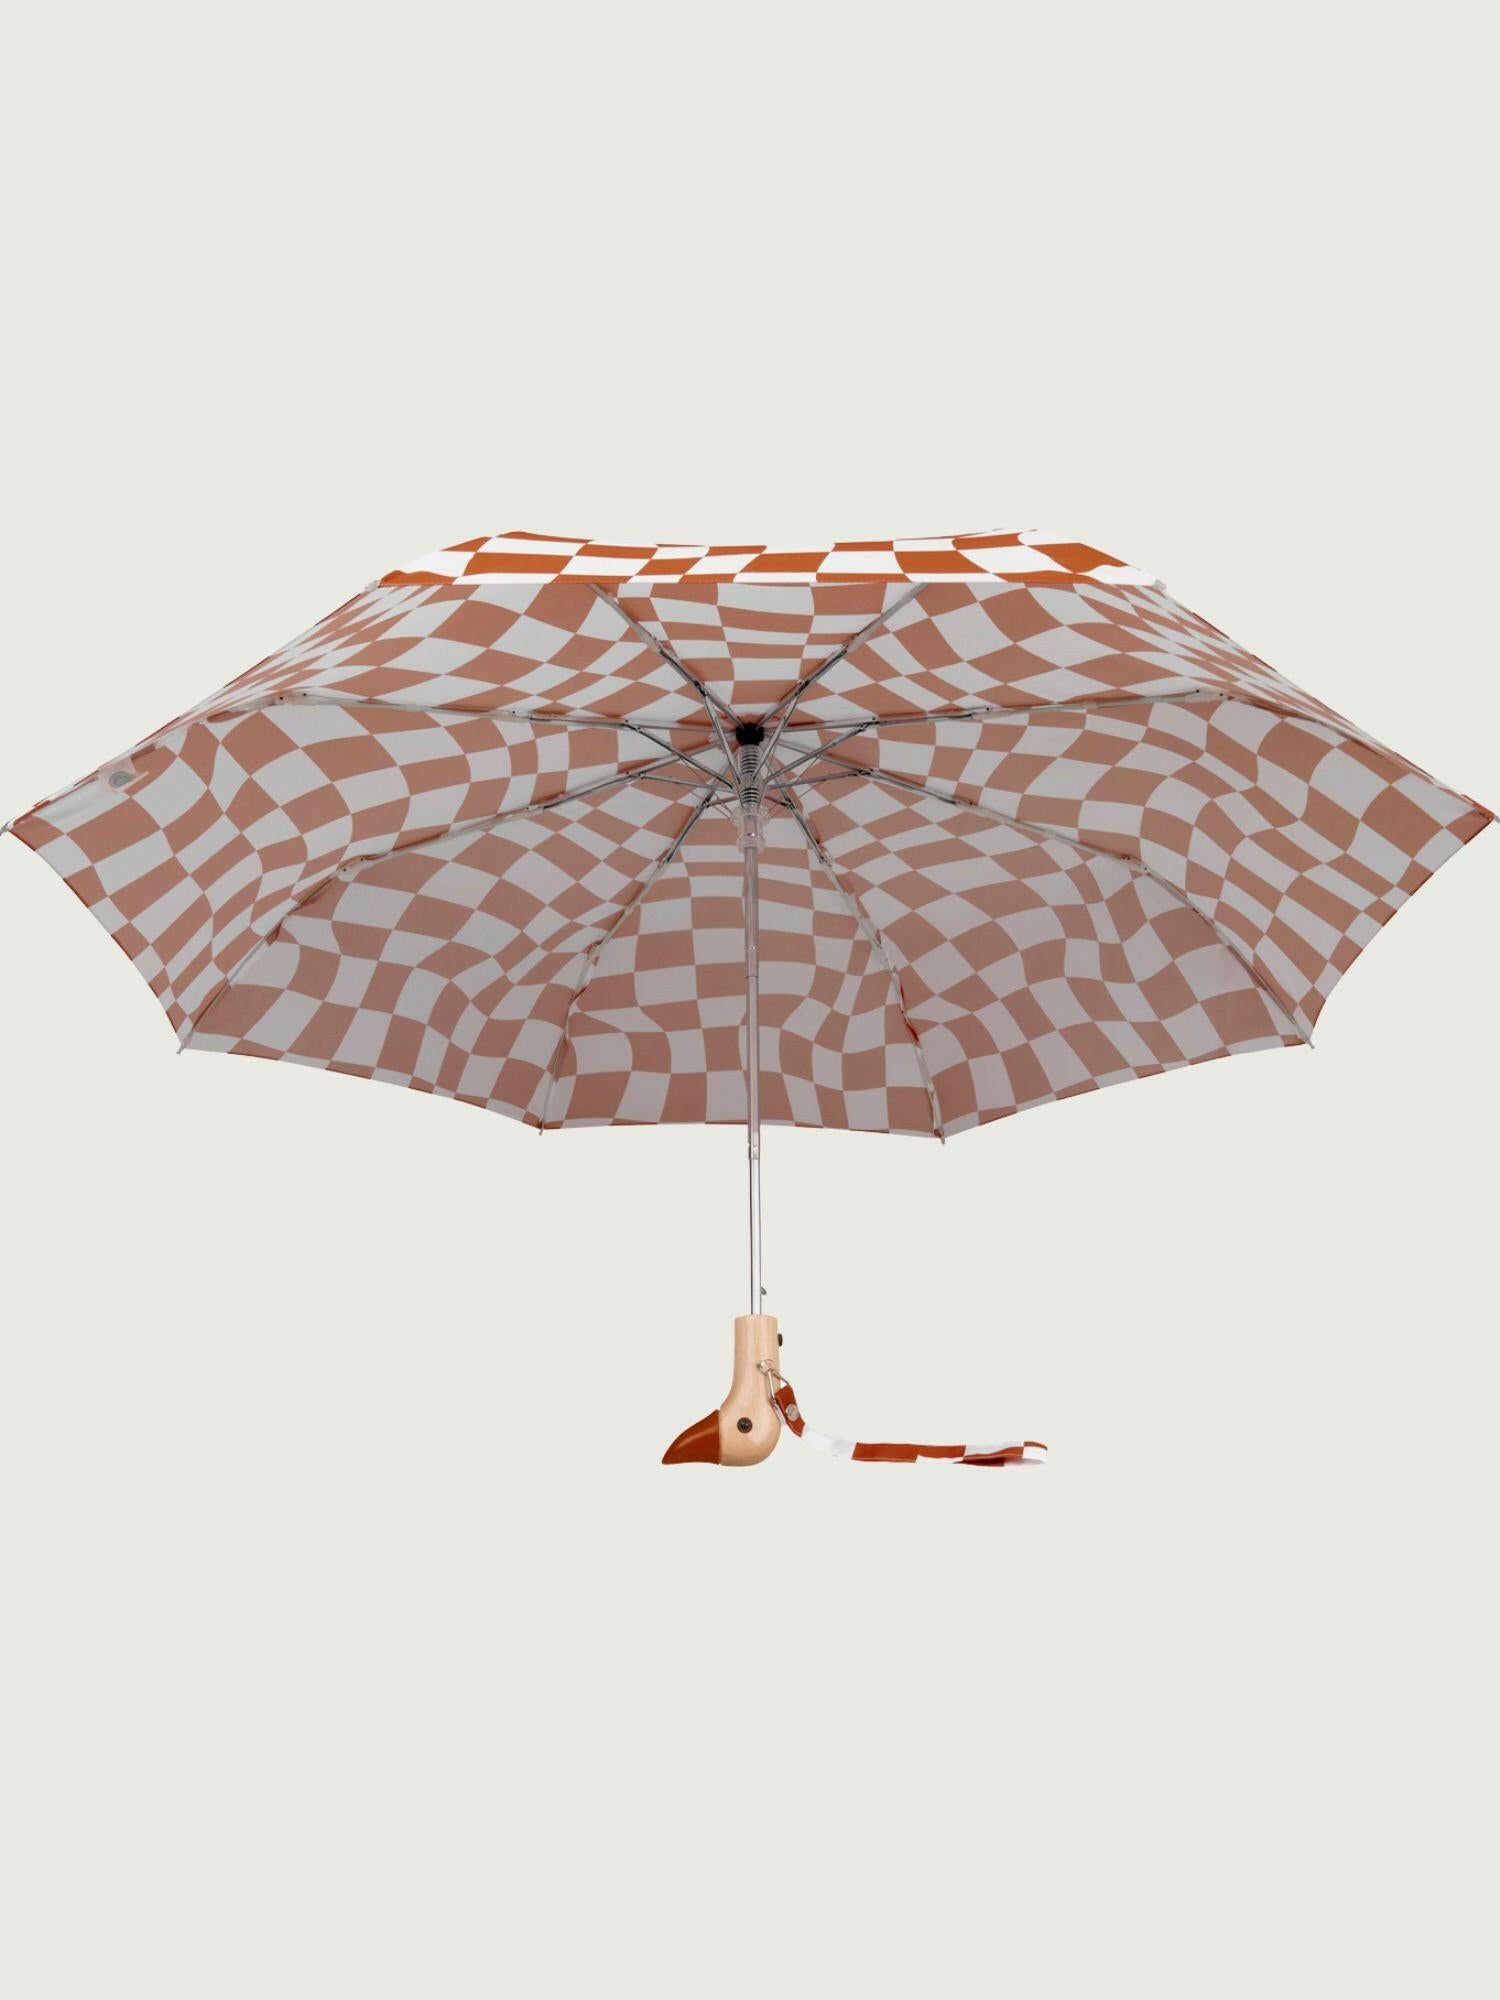 Peanut Butter Checkers Eco-Friendly Umbrella.